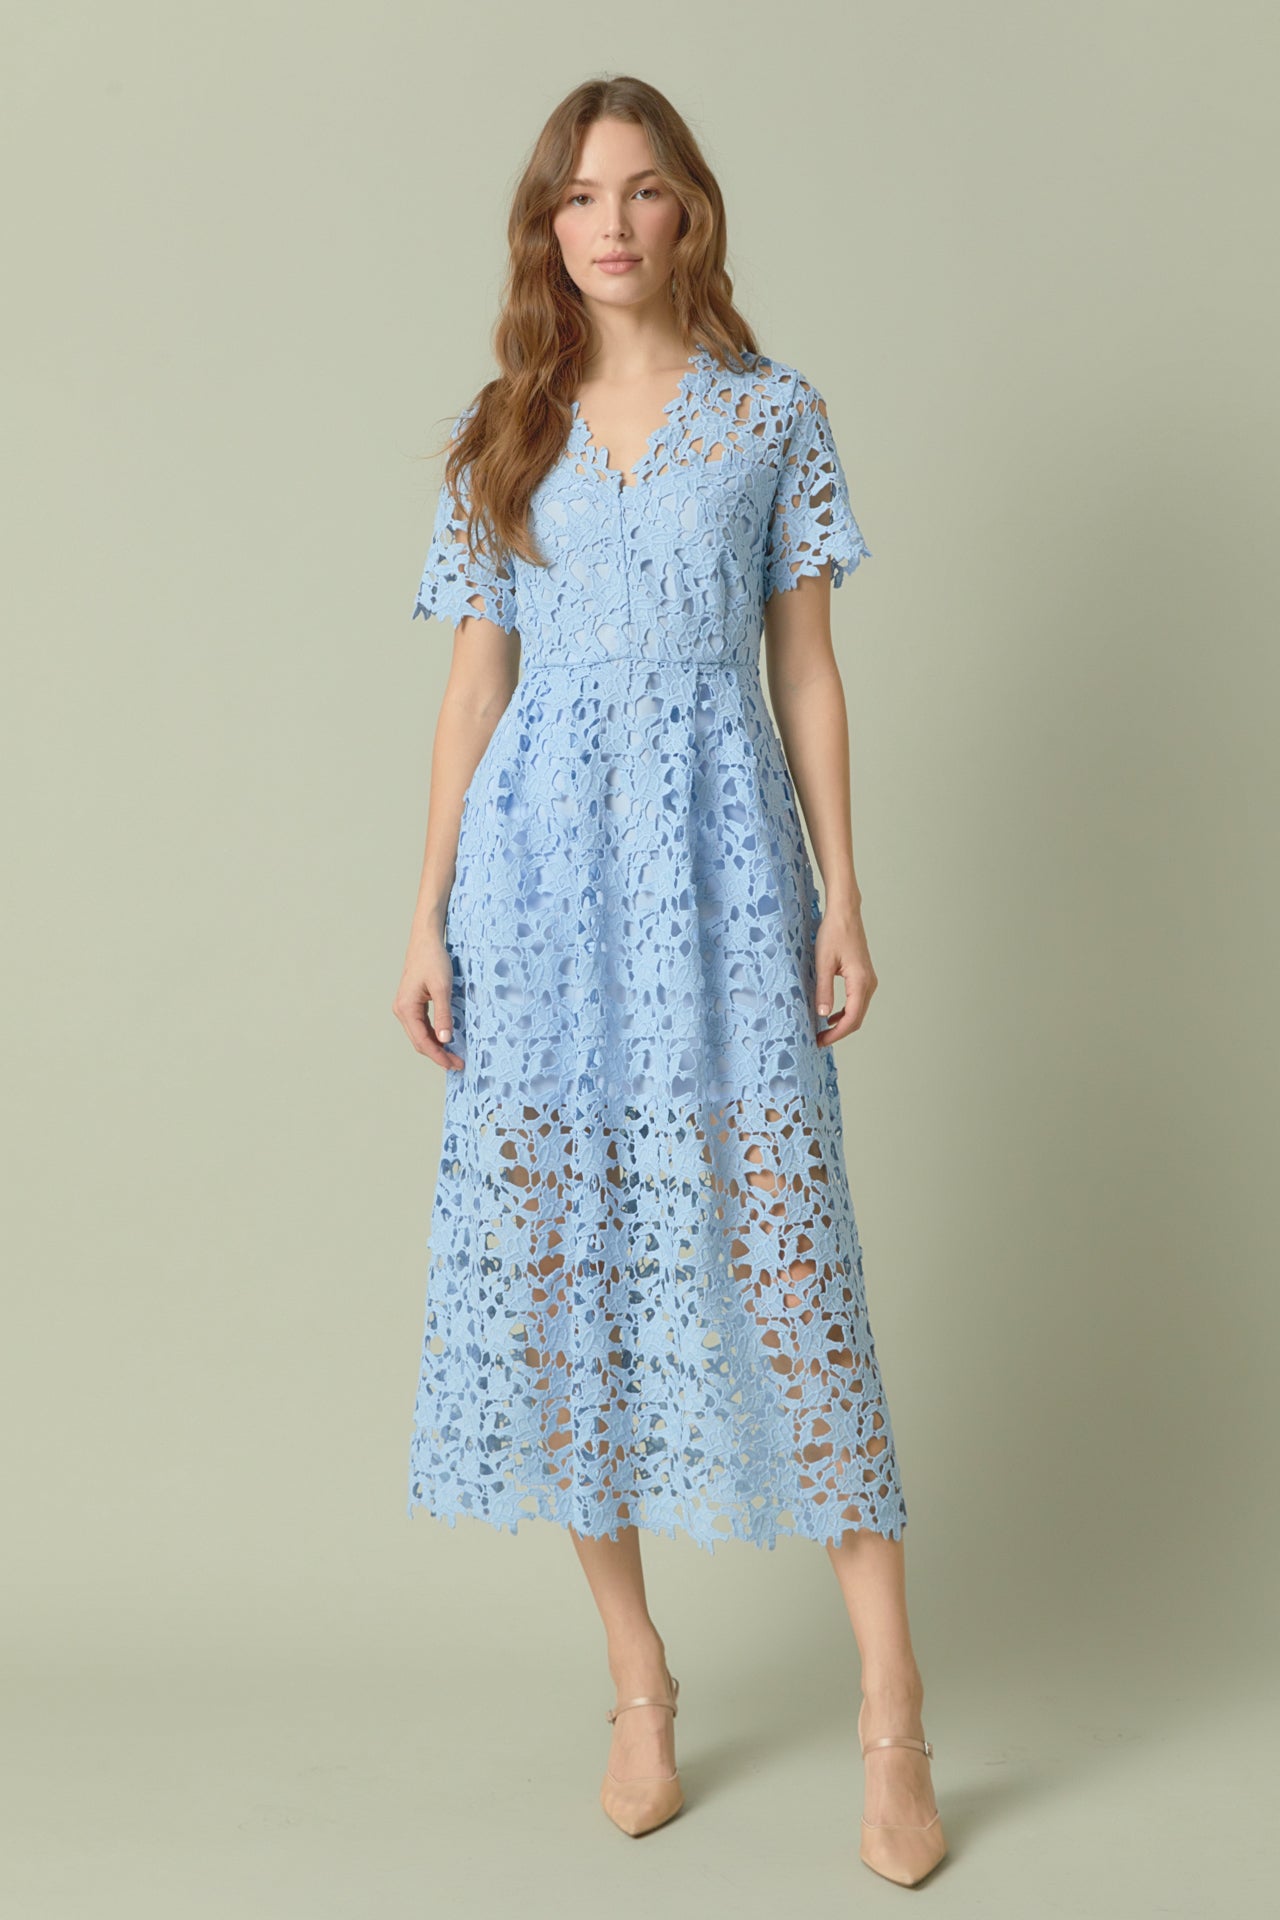 Allover Floral Print Contrast Lace Trim Dress